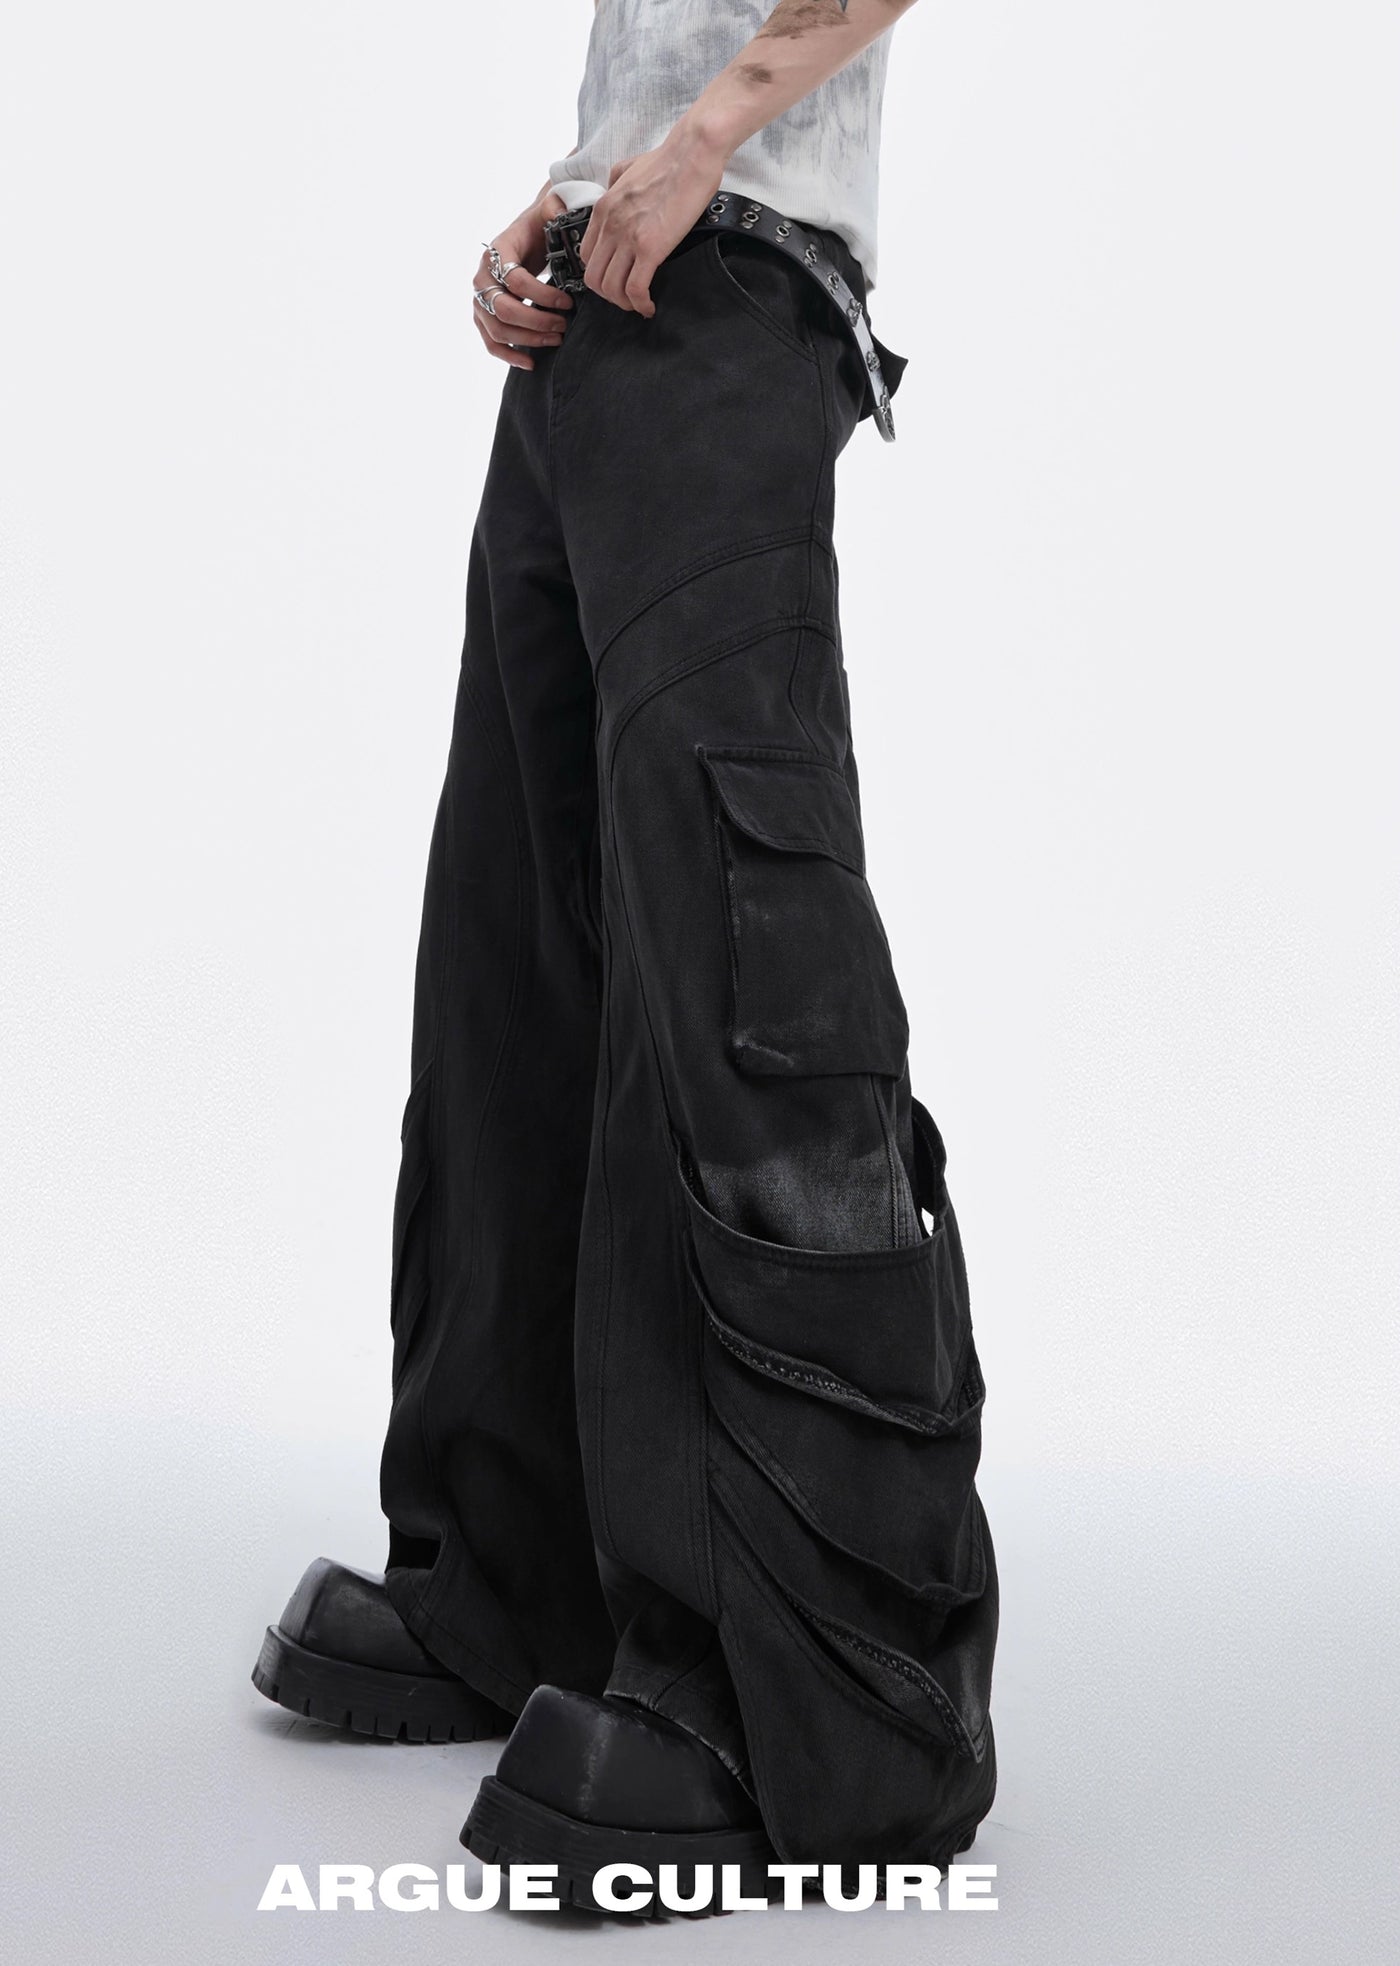 【Culture E】Hem Gimmick design wide silhouette denim pants  CE0132